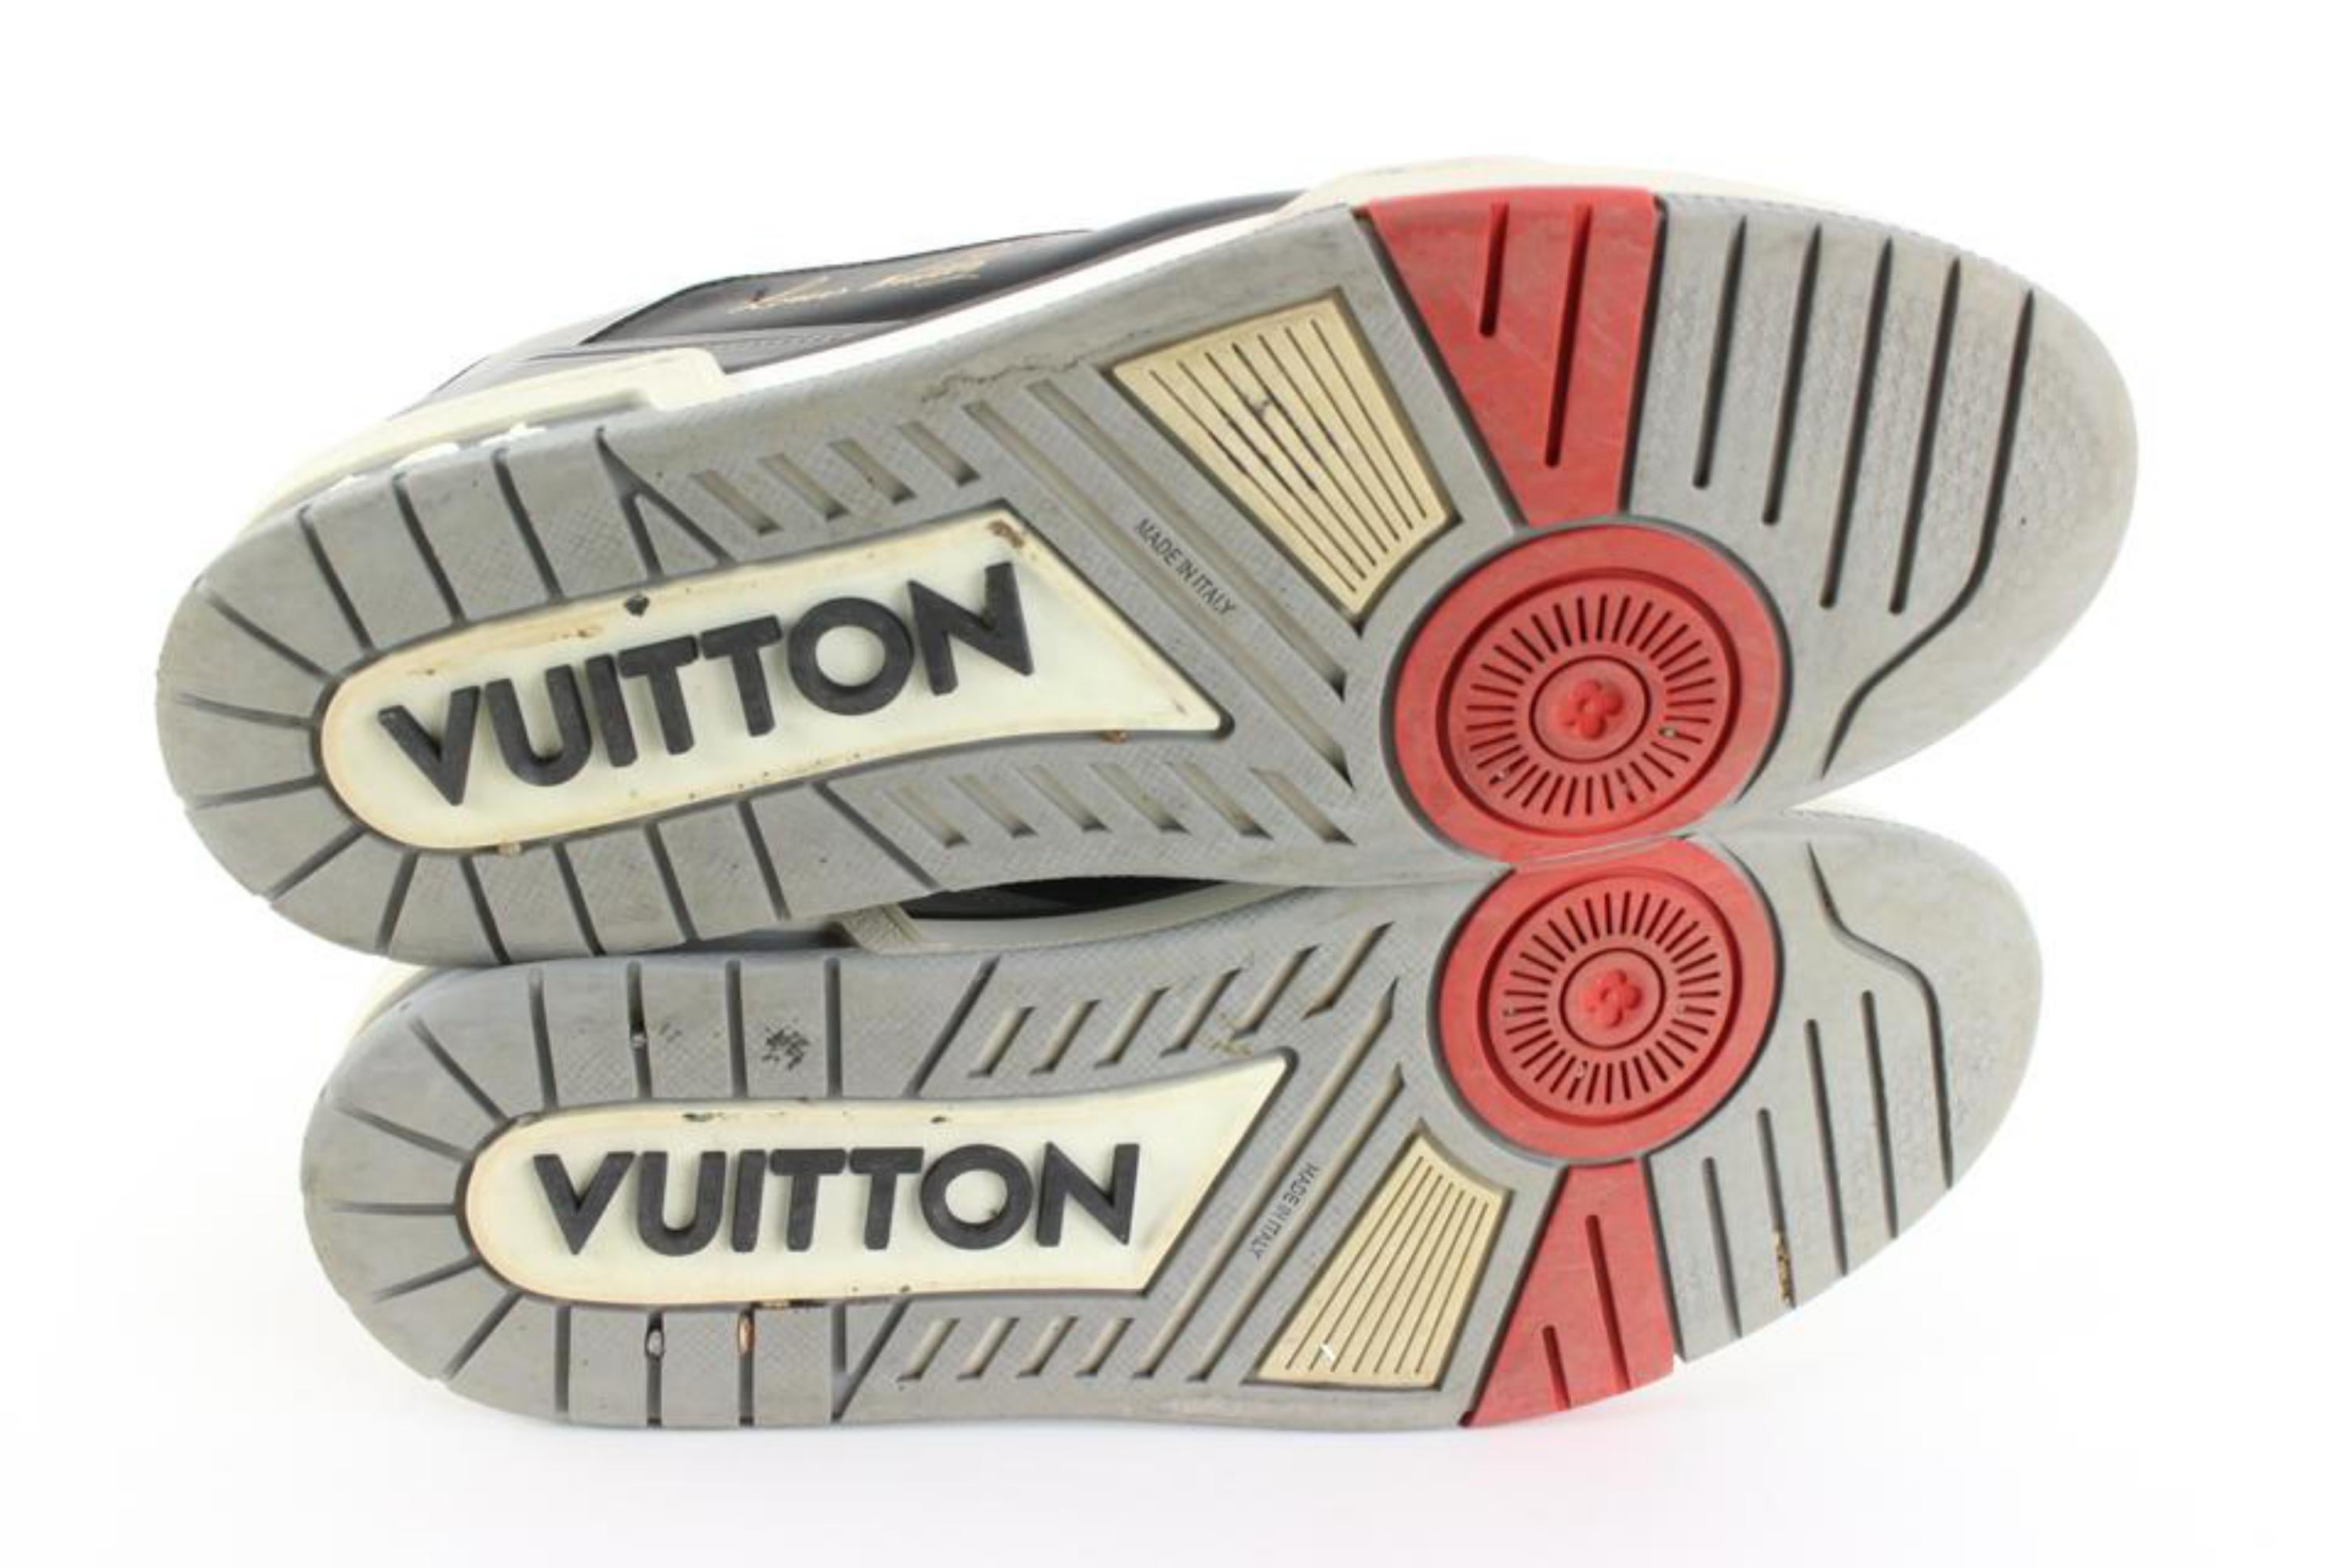 Louis Vuitton Men's 10.5 US Virgil Abloh Trainer Sneaker Low 86lz727s 3